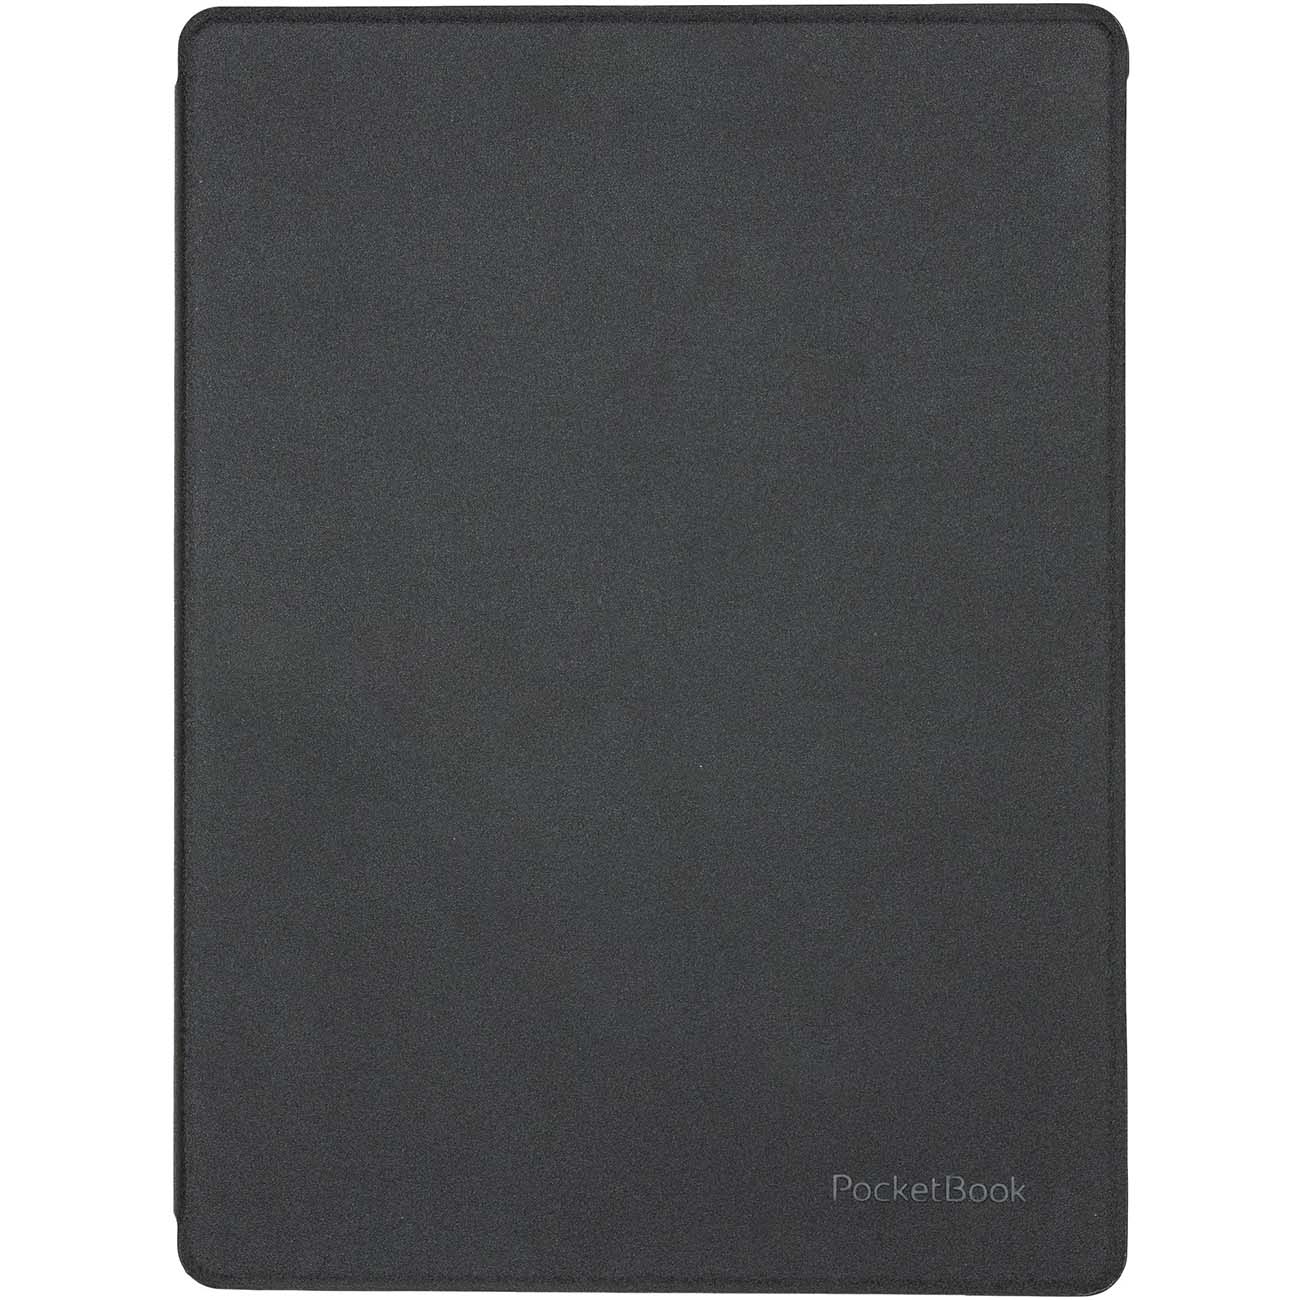 Оригинальная чехол-обложка Pocketbook 970 (HN-SL-PU-970-BK-WW) shell-cover черный